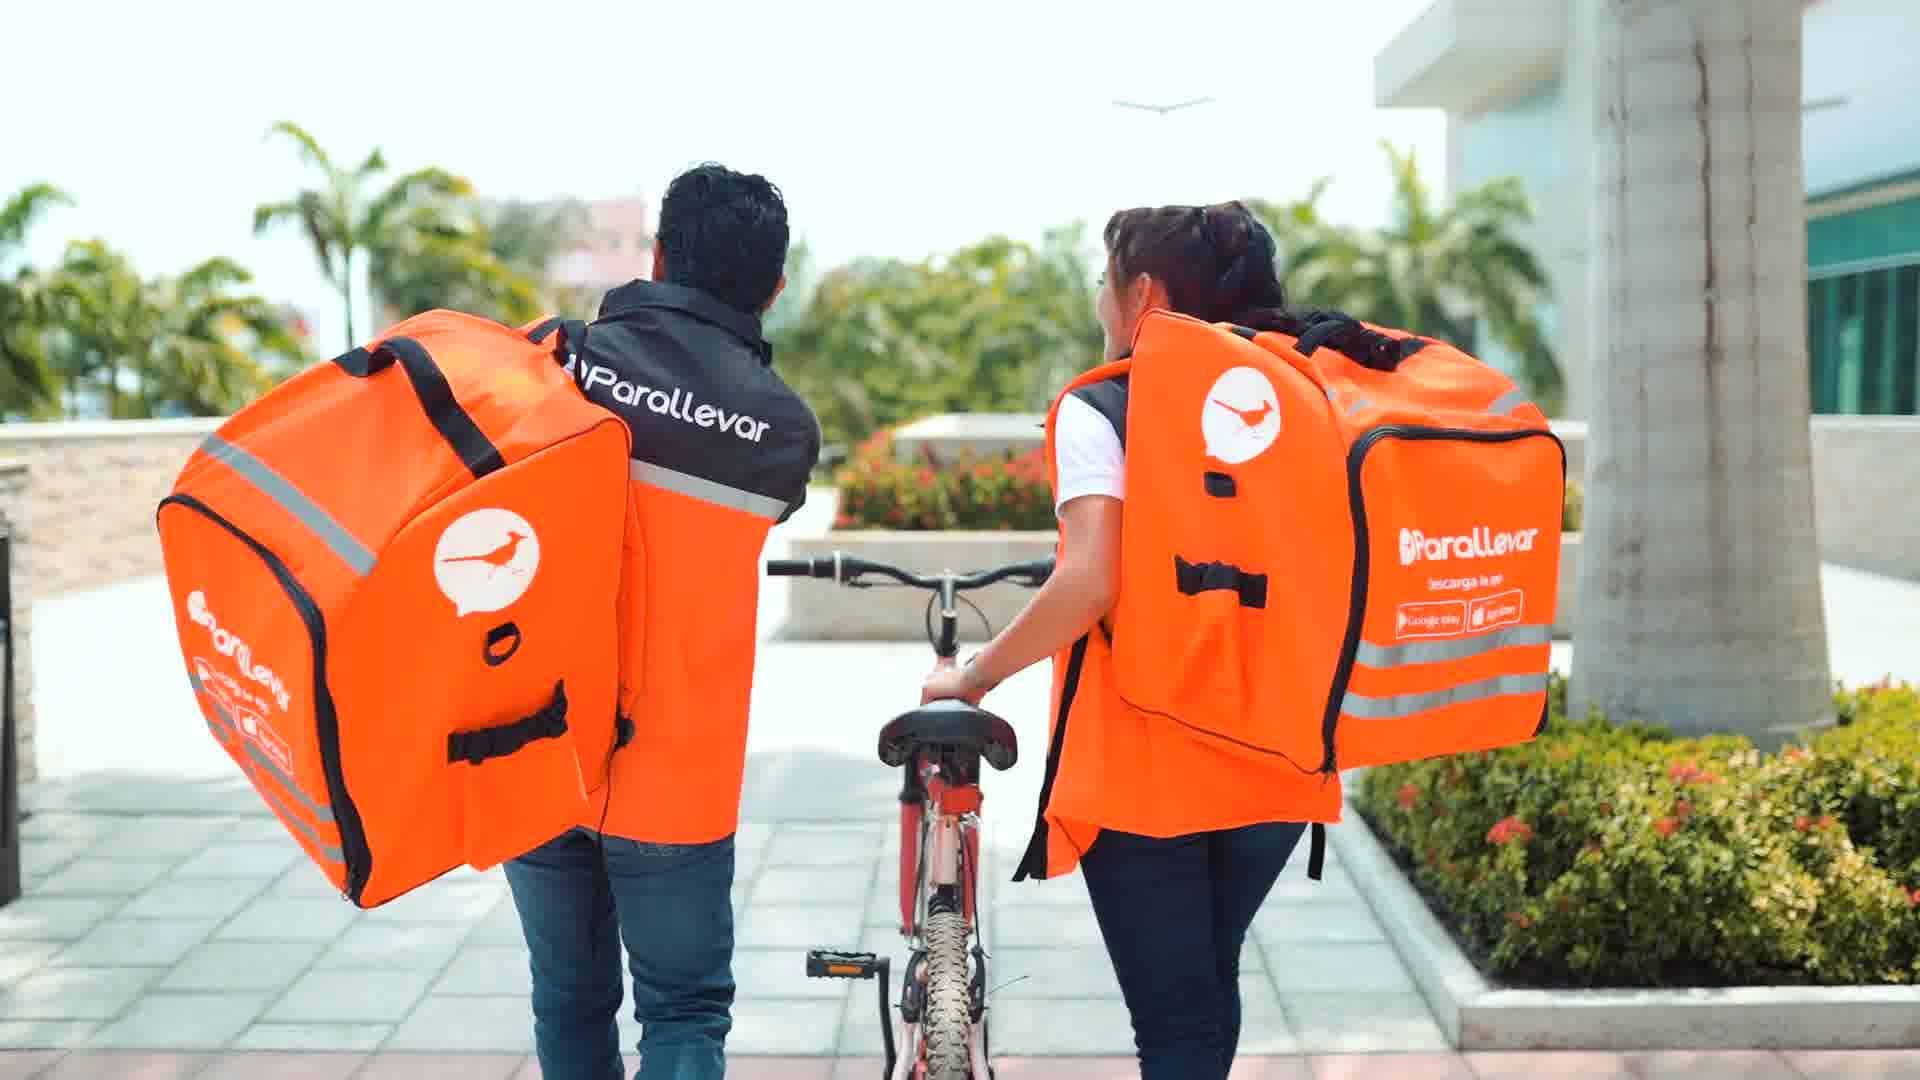 la startup ecuatoriana, parallevar, recauda us$200,000 para competir en el mercado de entregas